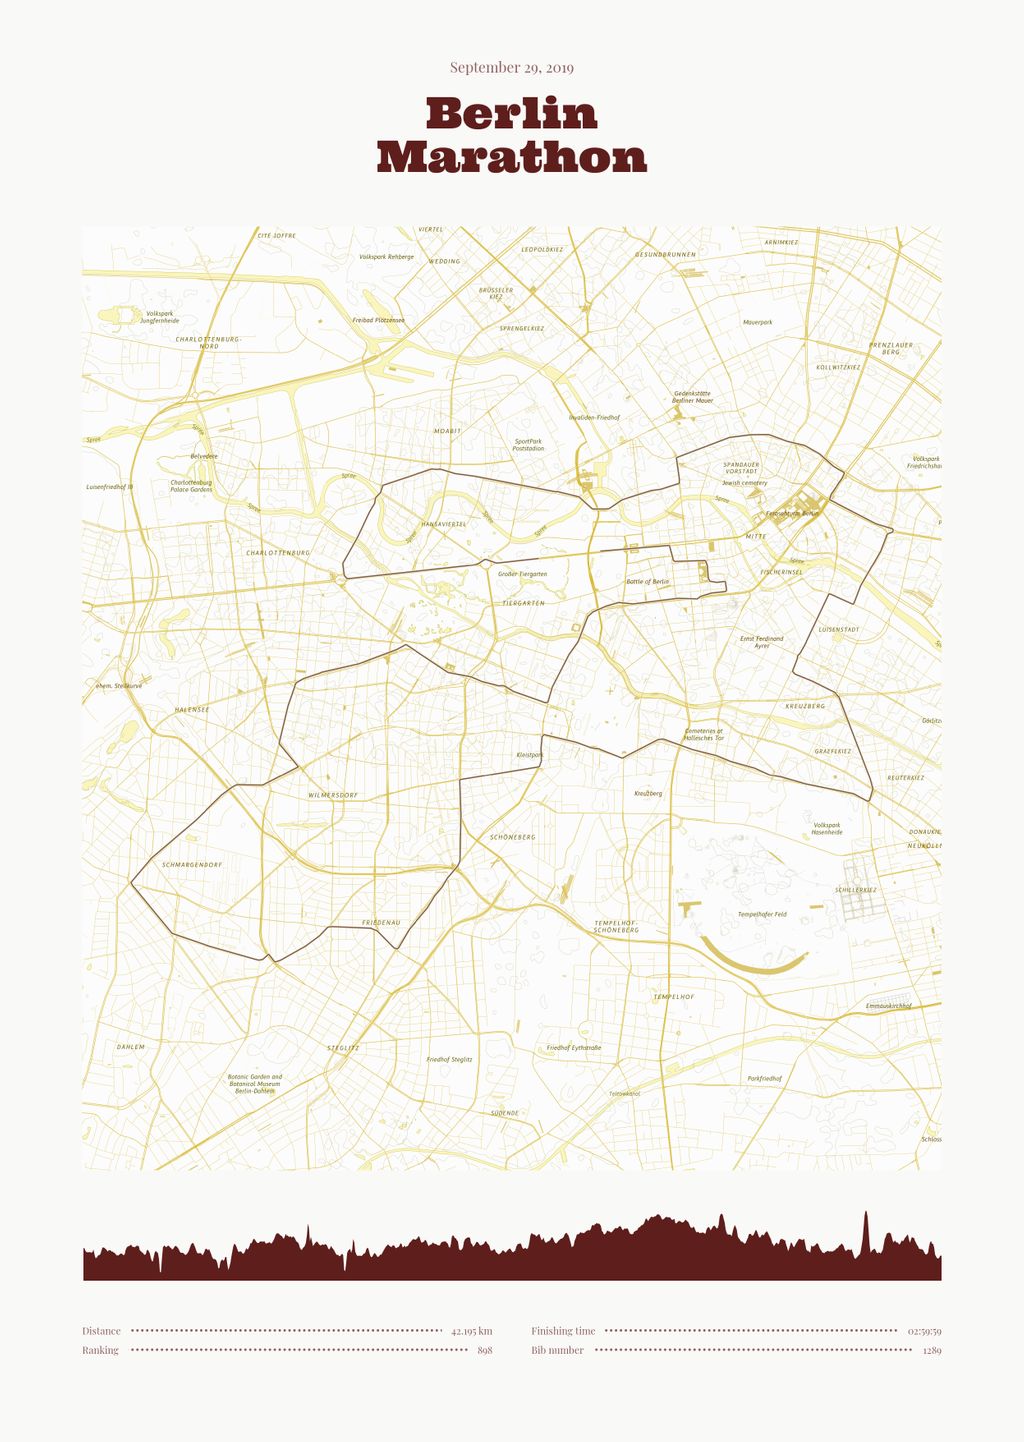 Póster con un mapa de Berlin 
Marathon